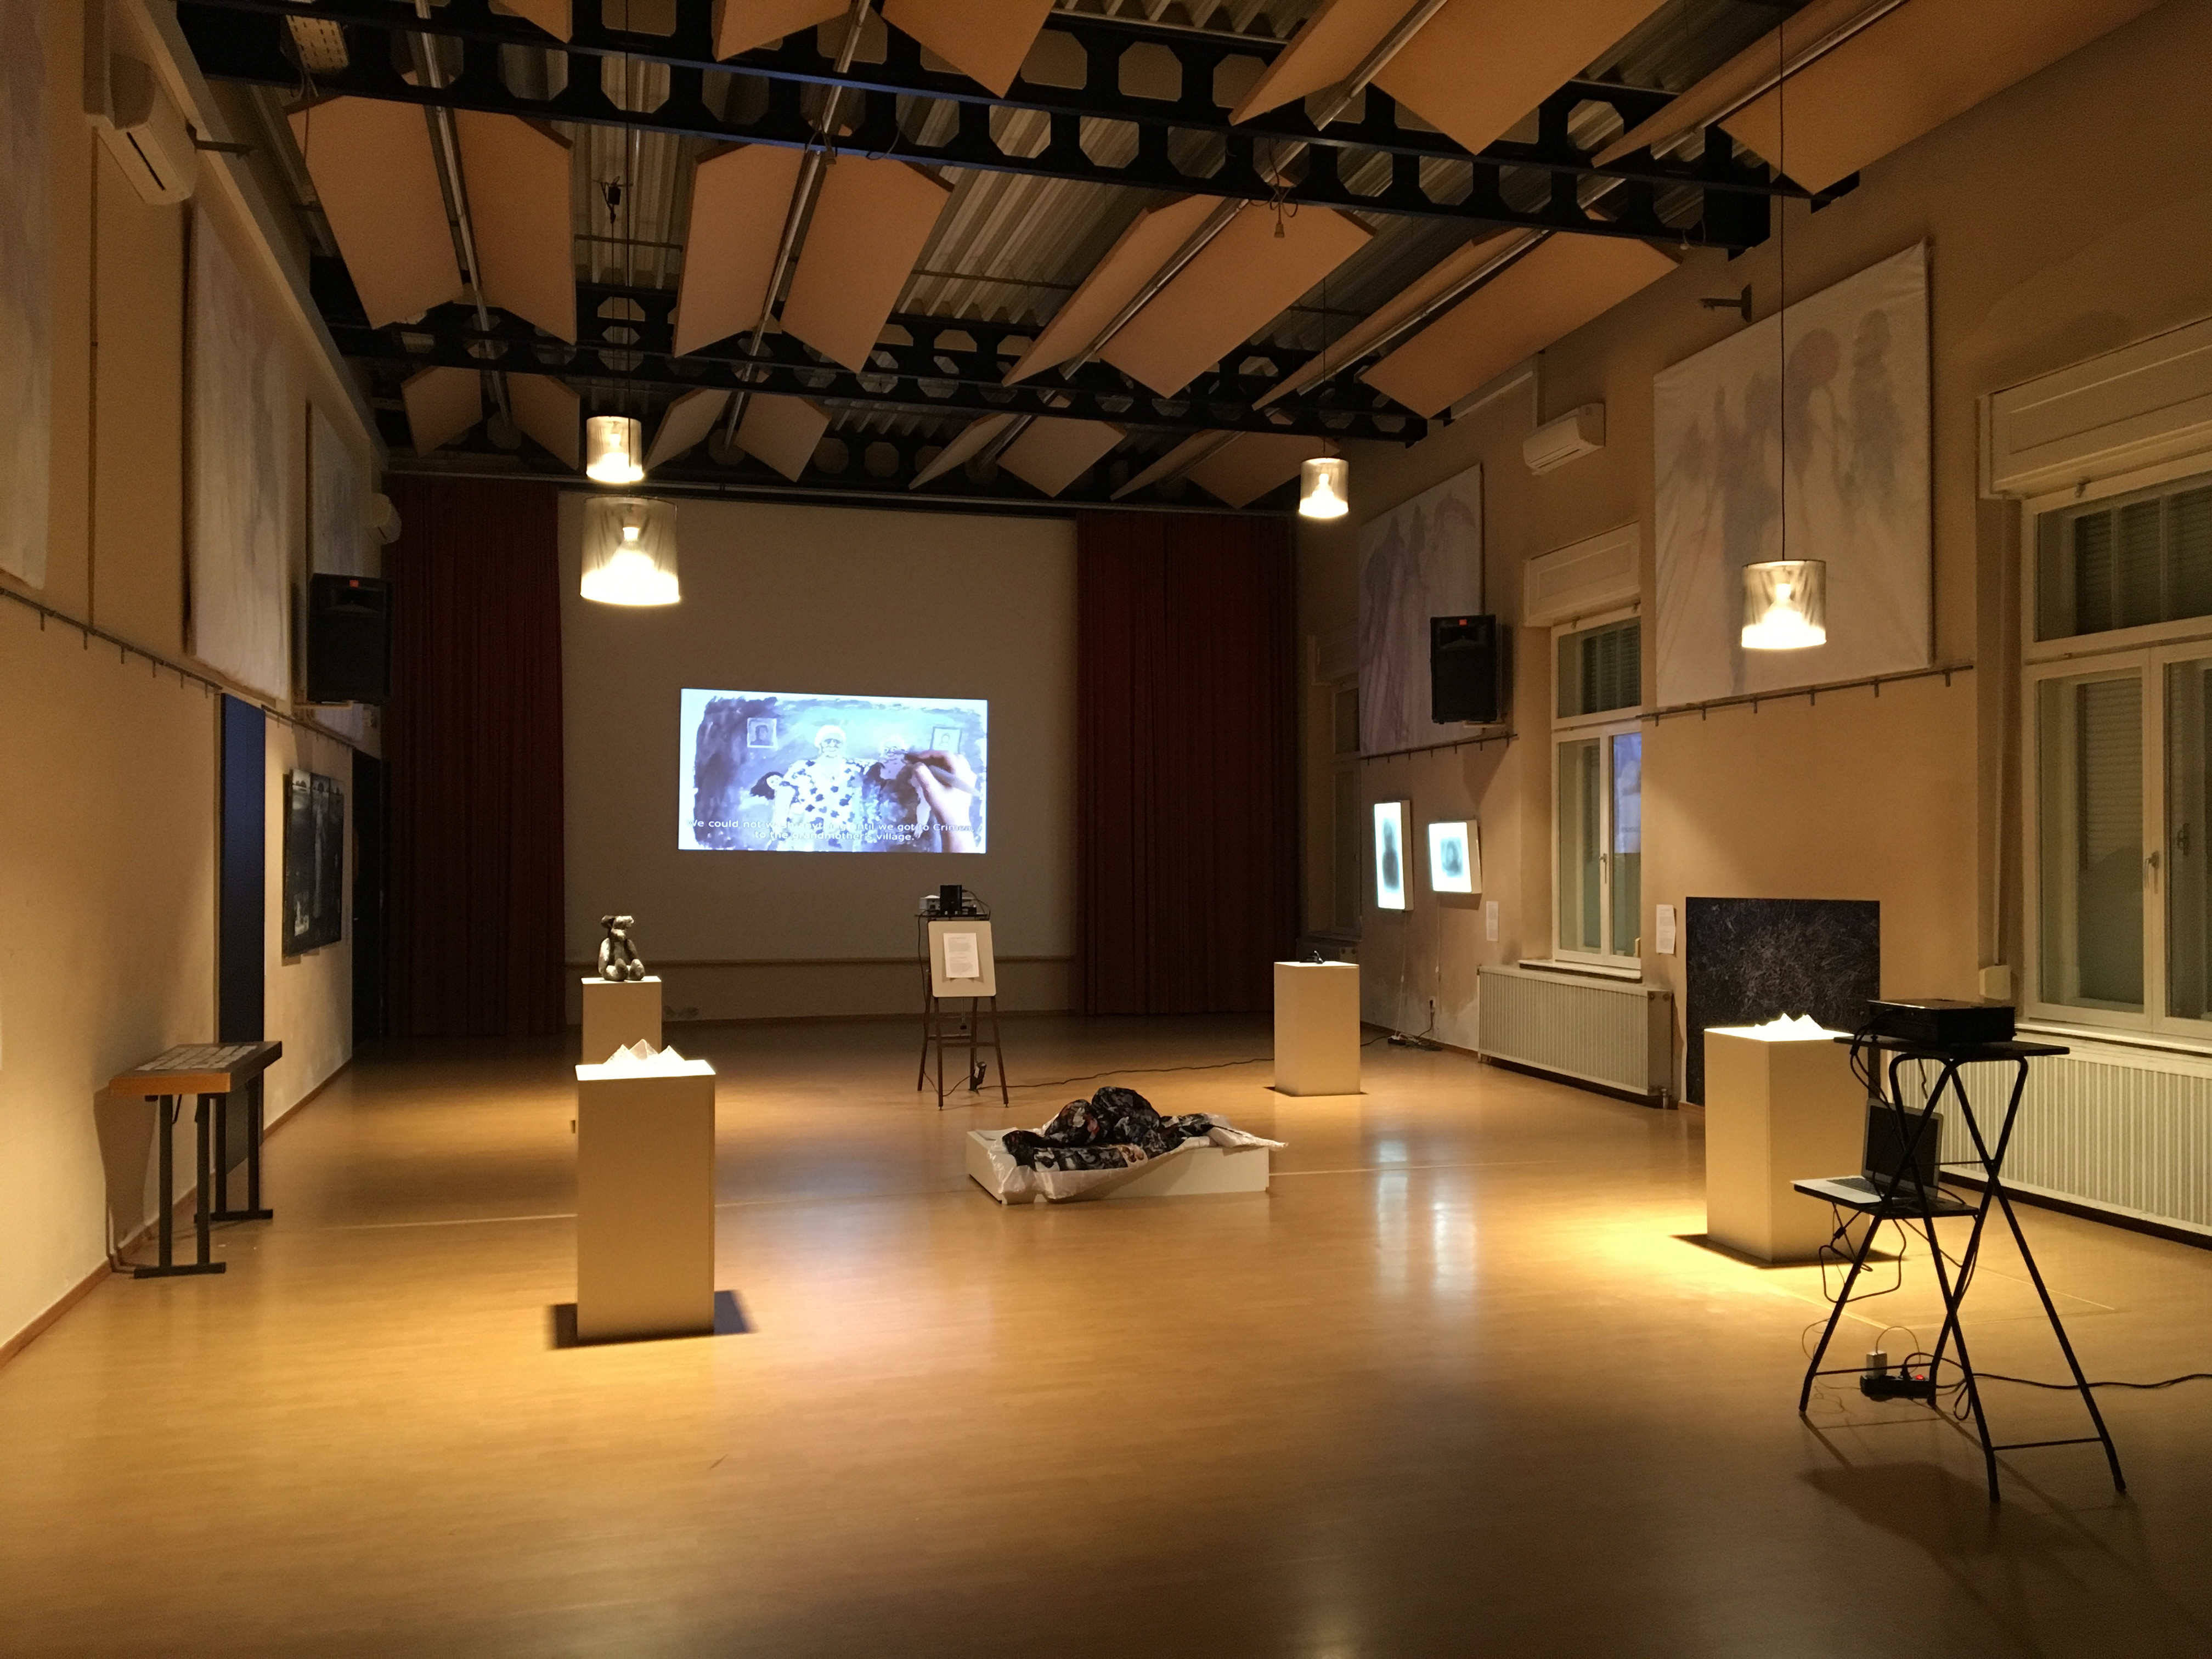 Installation view of the exhibition Family Archive, 2018 at Theater am Steg, Baden, Austria. Curated by Elena Konyushikhina. Courtesy Elena Konyushikhina.